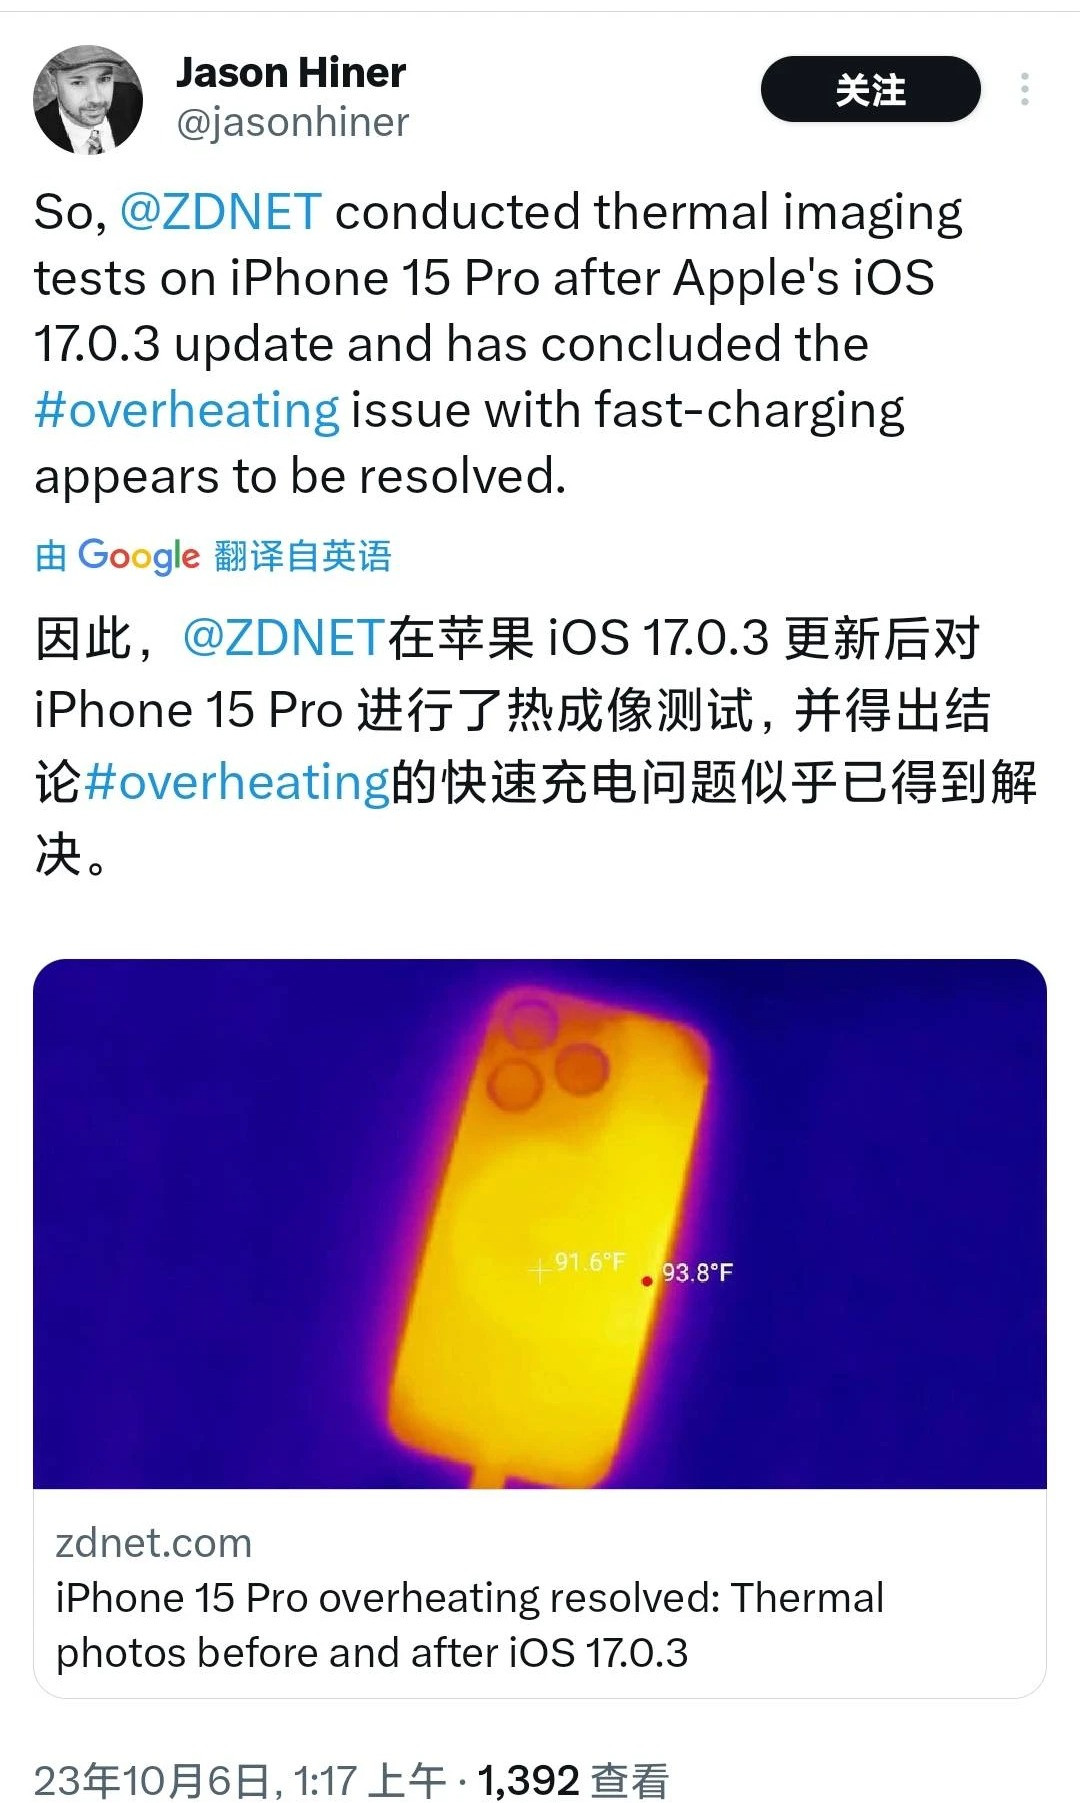 苹果 iOS 17.0.3 升级让 iPhone 15 Pro / Max 过热问题 “凉快” 下来